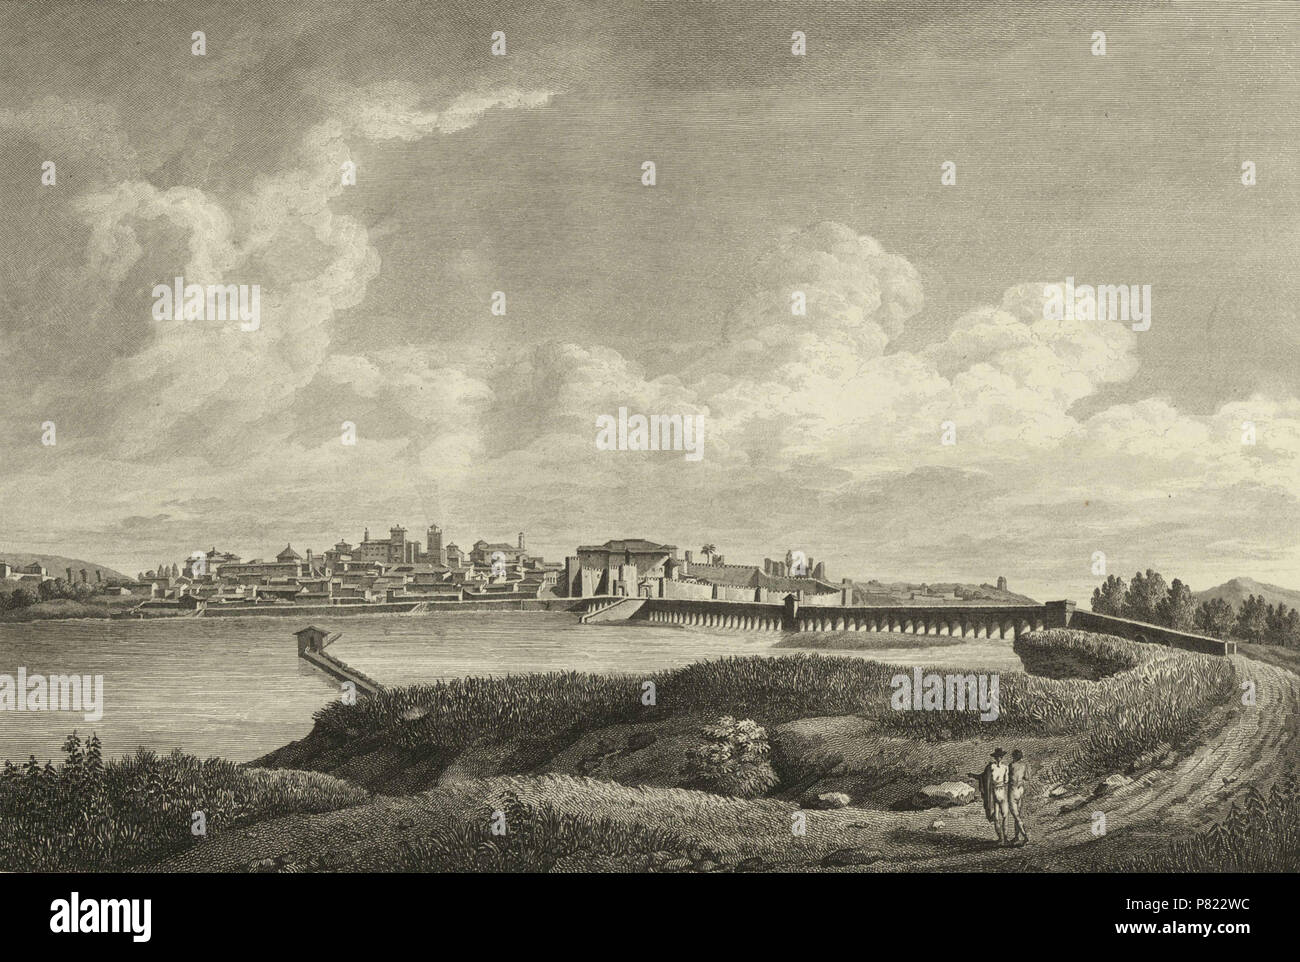 3 1806-1820, Voyage pittoresque et historique de l'Espagne, tomo I, Vista general de la ciudad de Mérida (cropped) Stock Photo